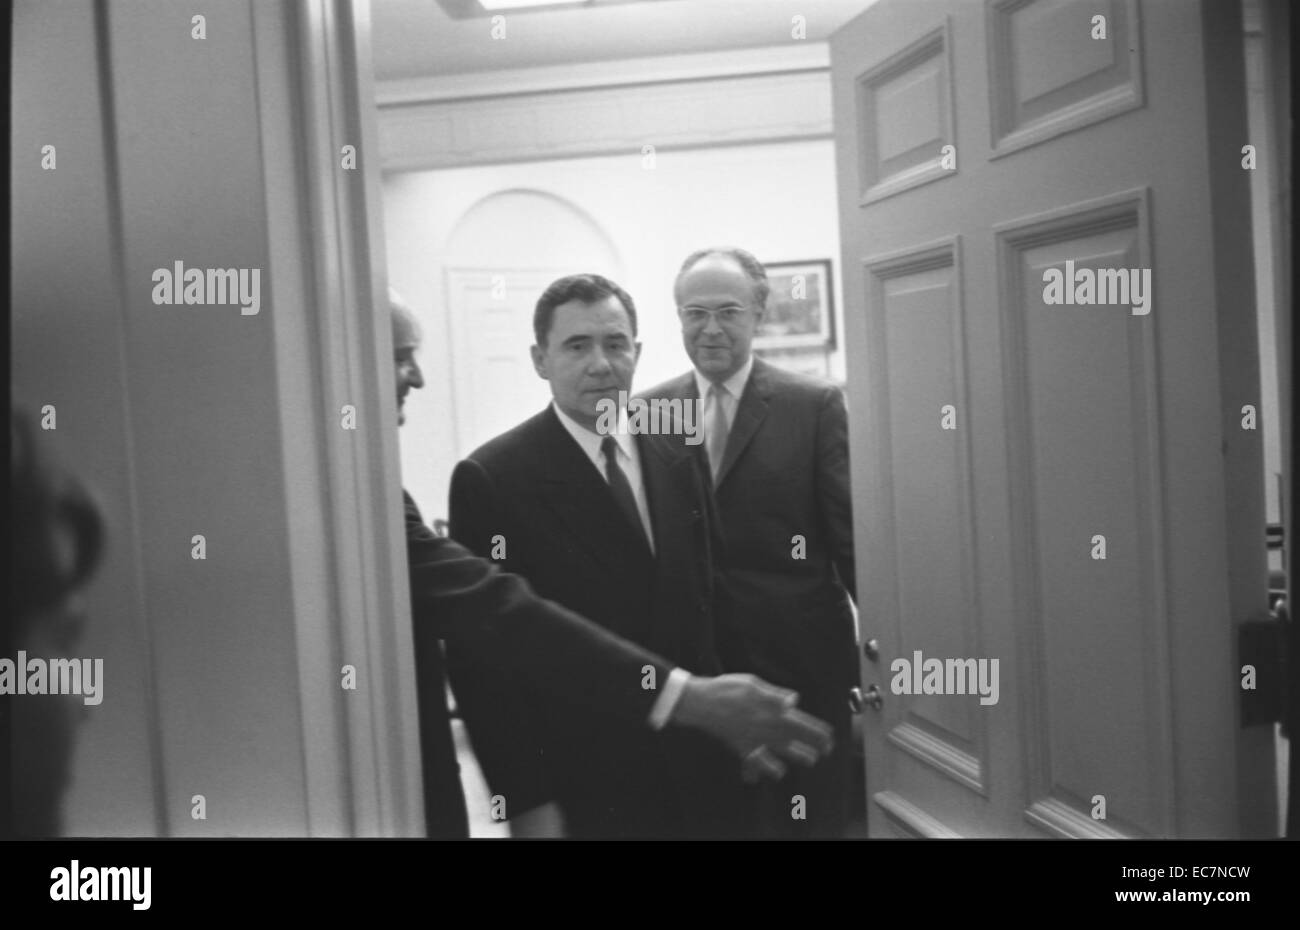 Le ministre des affaires étrangères soviétique Andrei Gromyko et Ambassadeur de l'Union soviétique pour les États-Unis, Anatoly F. Dobrynin, marchant à travers une porte à la Maison Blanche, à Washington, D.C. Pendant la crise des missiles de Cuba. Banque D'Images